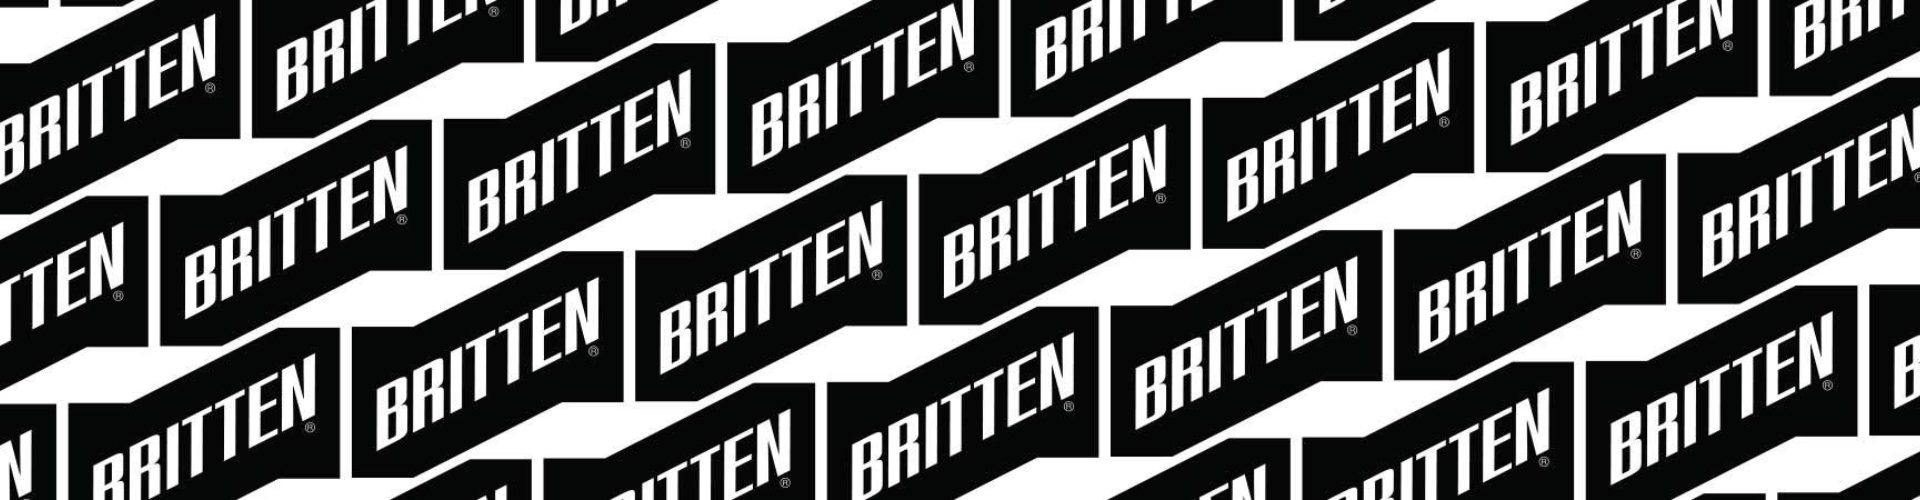 Britten Unveils Bold New Image